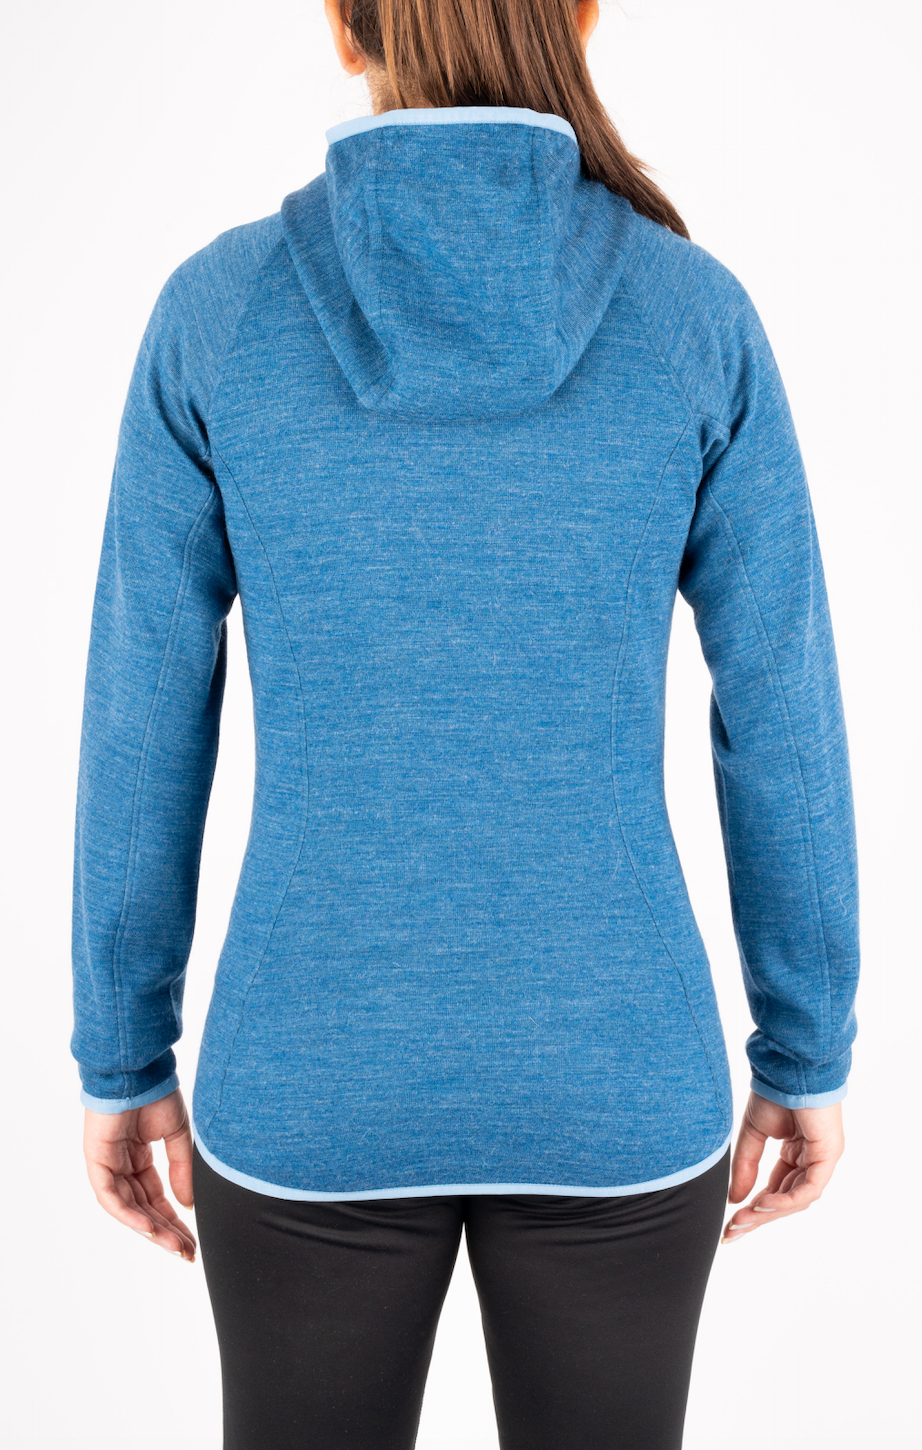 Nomada | Alpaca Women's Sweatshirt